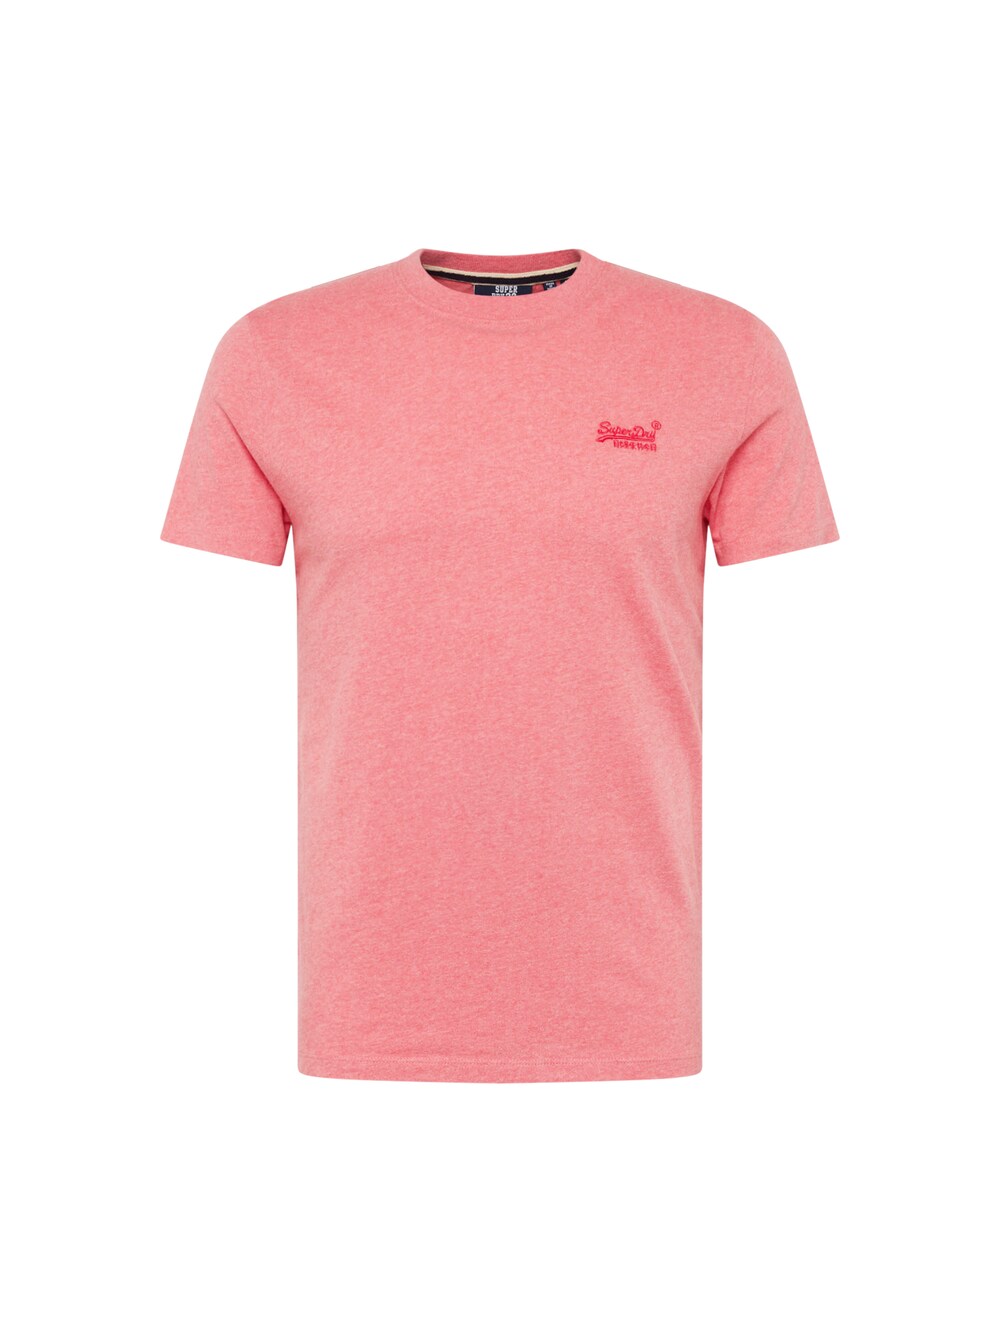 Зауженная футболка Superdry, темно-розовый/пестрый розовый